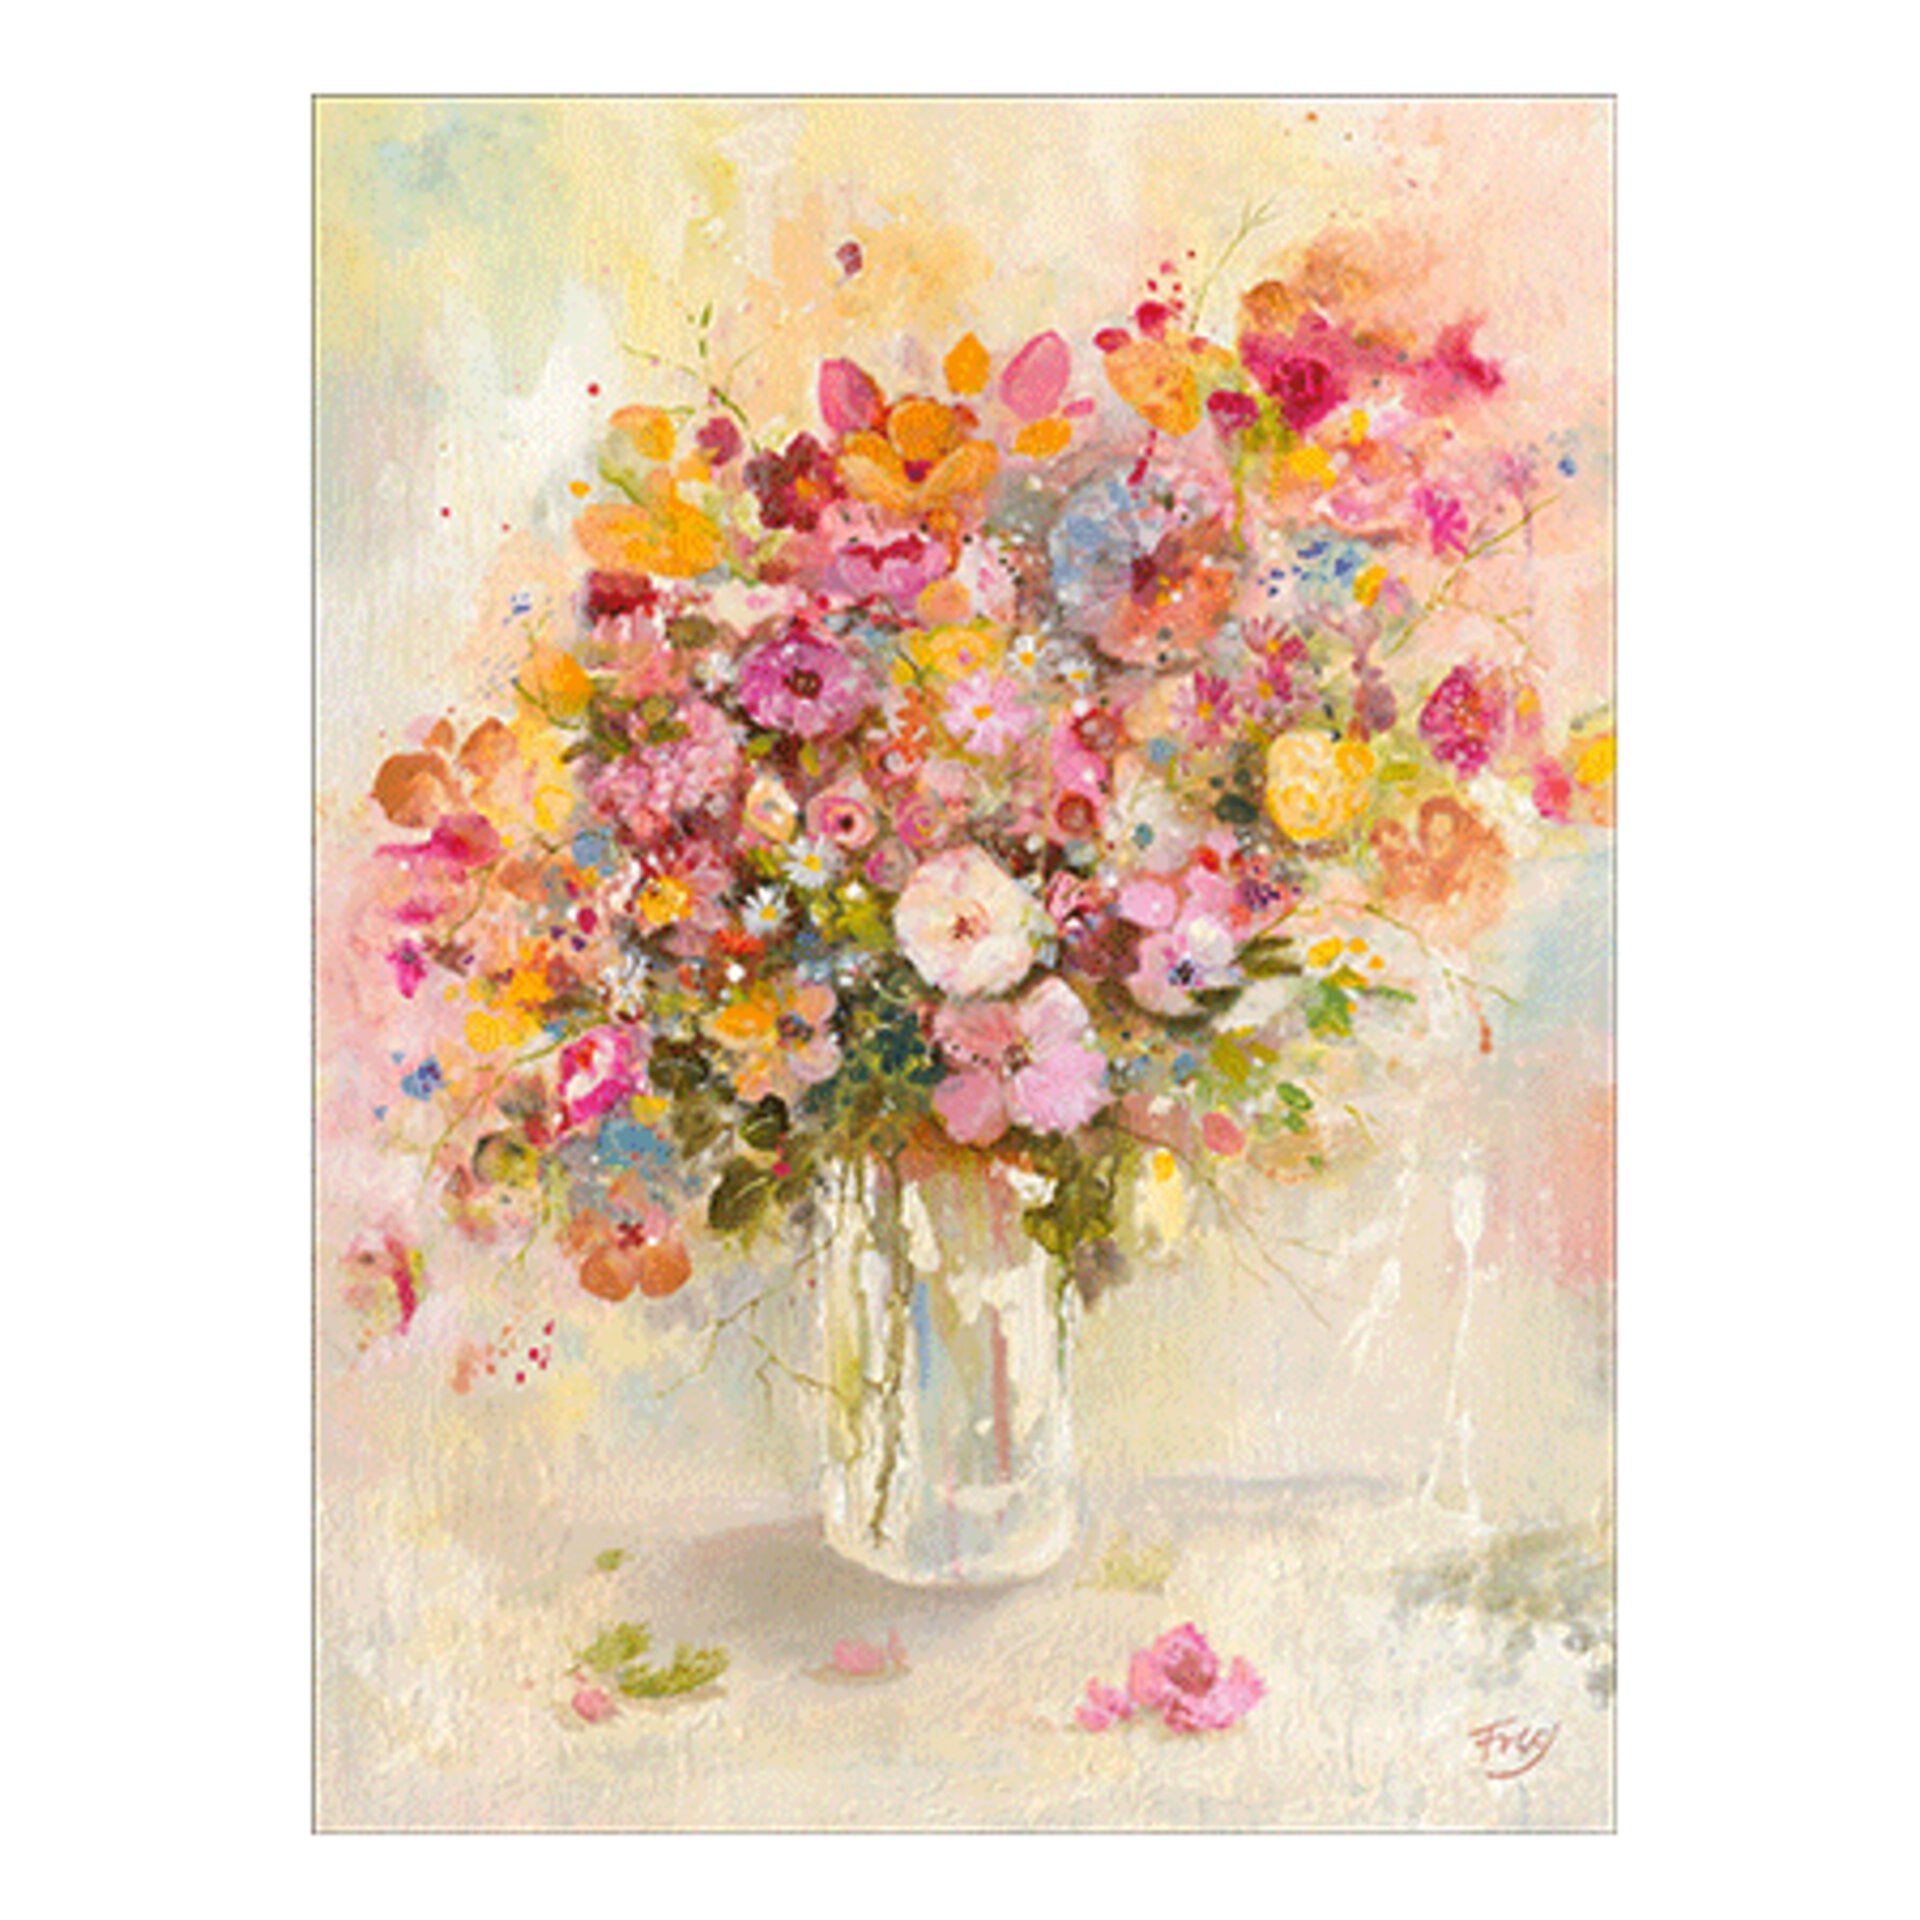 Gemaltes Bild in Pastelltönen zeigt eine Wildblumen-Strauß in einer einfachen Glas Vase